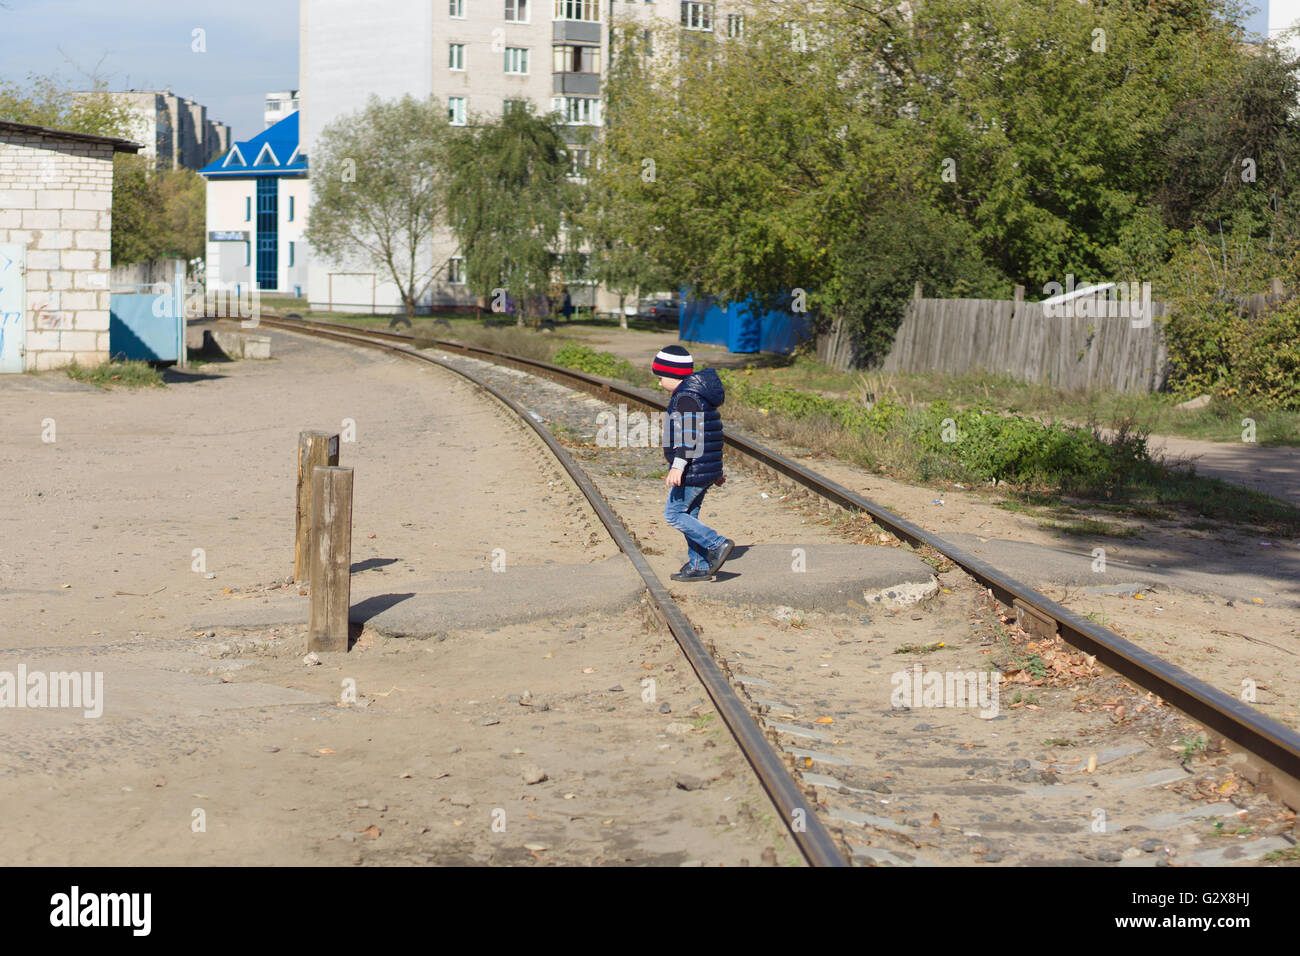 El muchacho transfiere las vías de ferrocarril ubicada en la ciudad Foto de stock